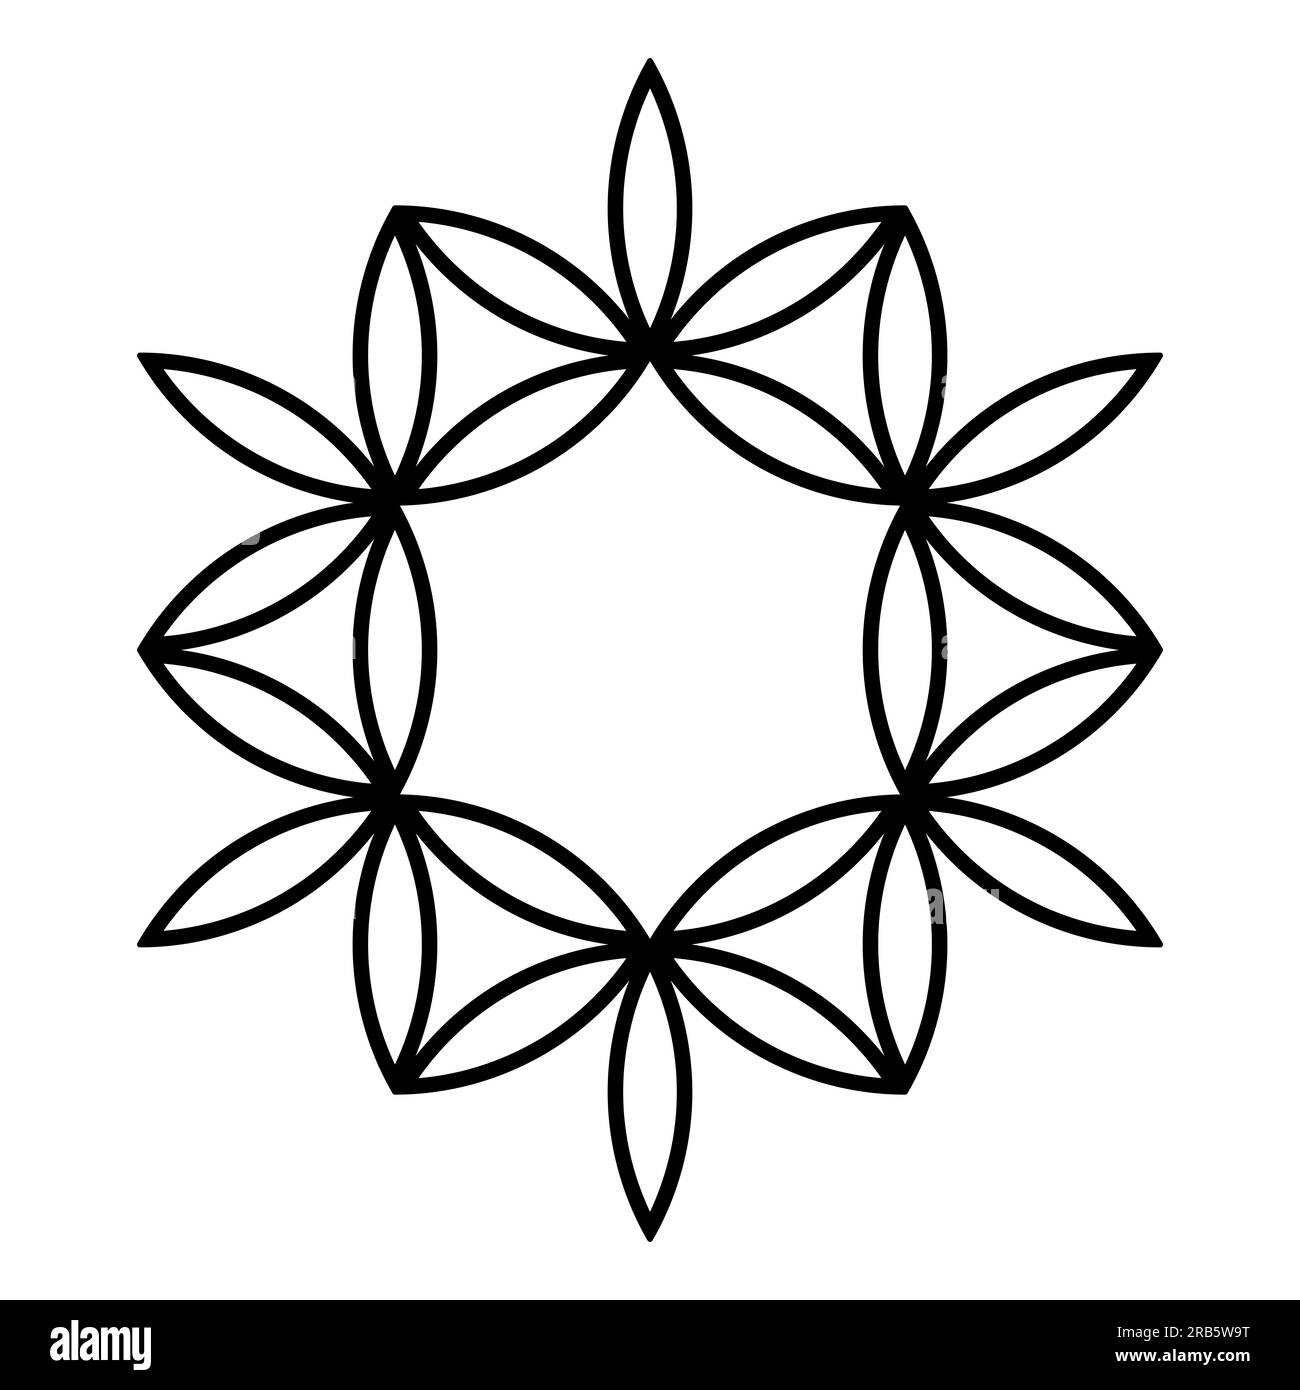 Symbole et motif, ressemblant à une fleur. Lentilles en forme de Vesica piscis, dérivées d'une fleur de vie, créant une étoile à 12 branches. Banque D'Images